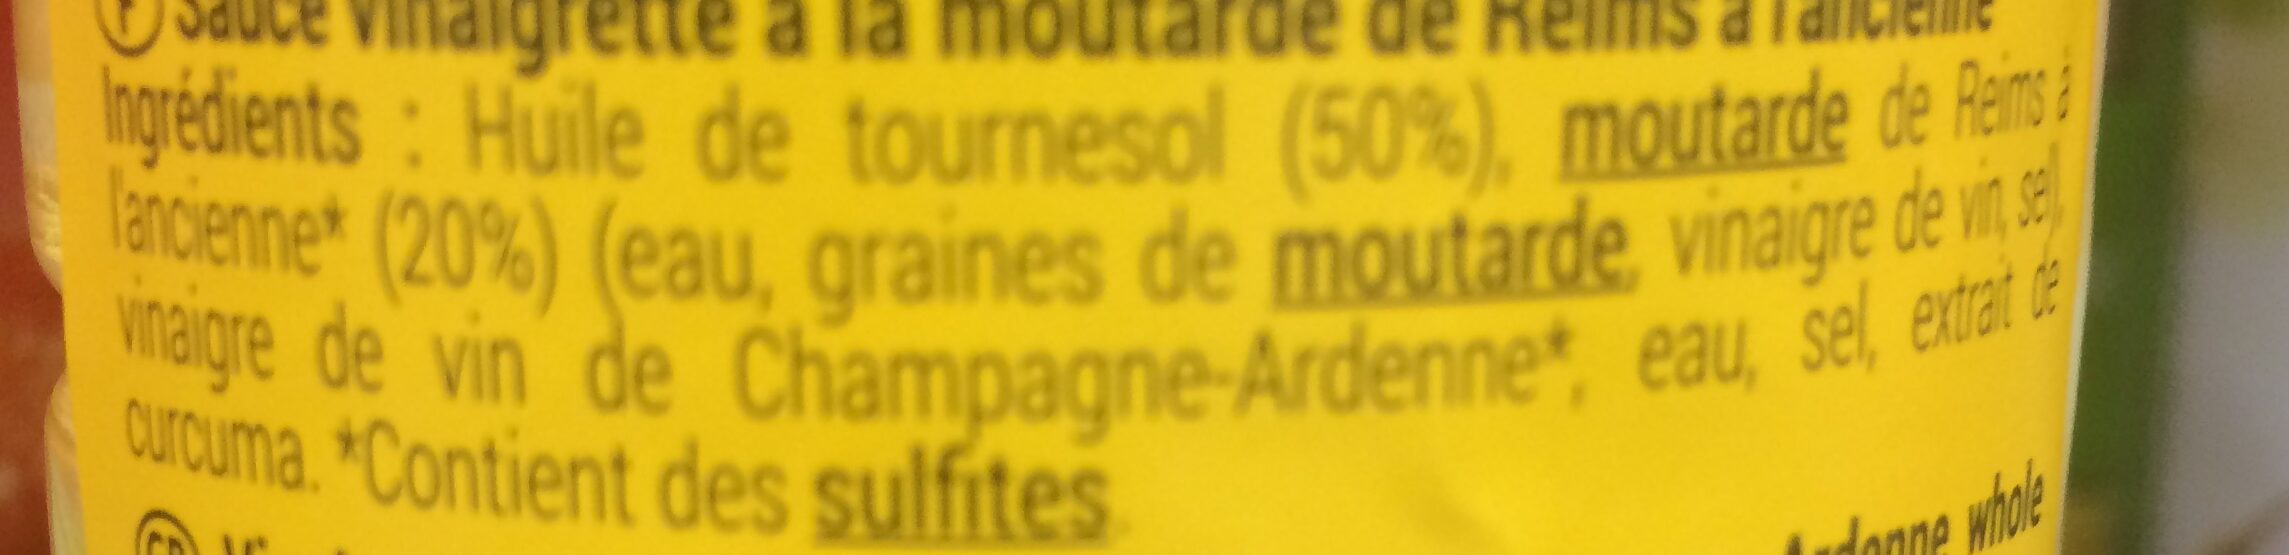 Vinaigrette moutarde de Reims à l'ancienne - Ingredients - fr